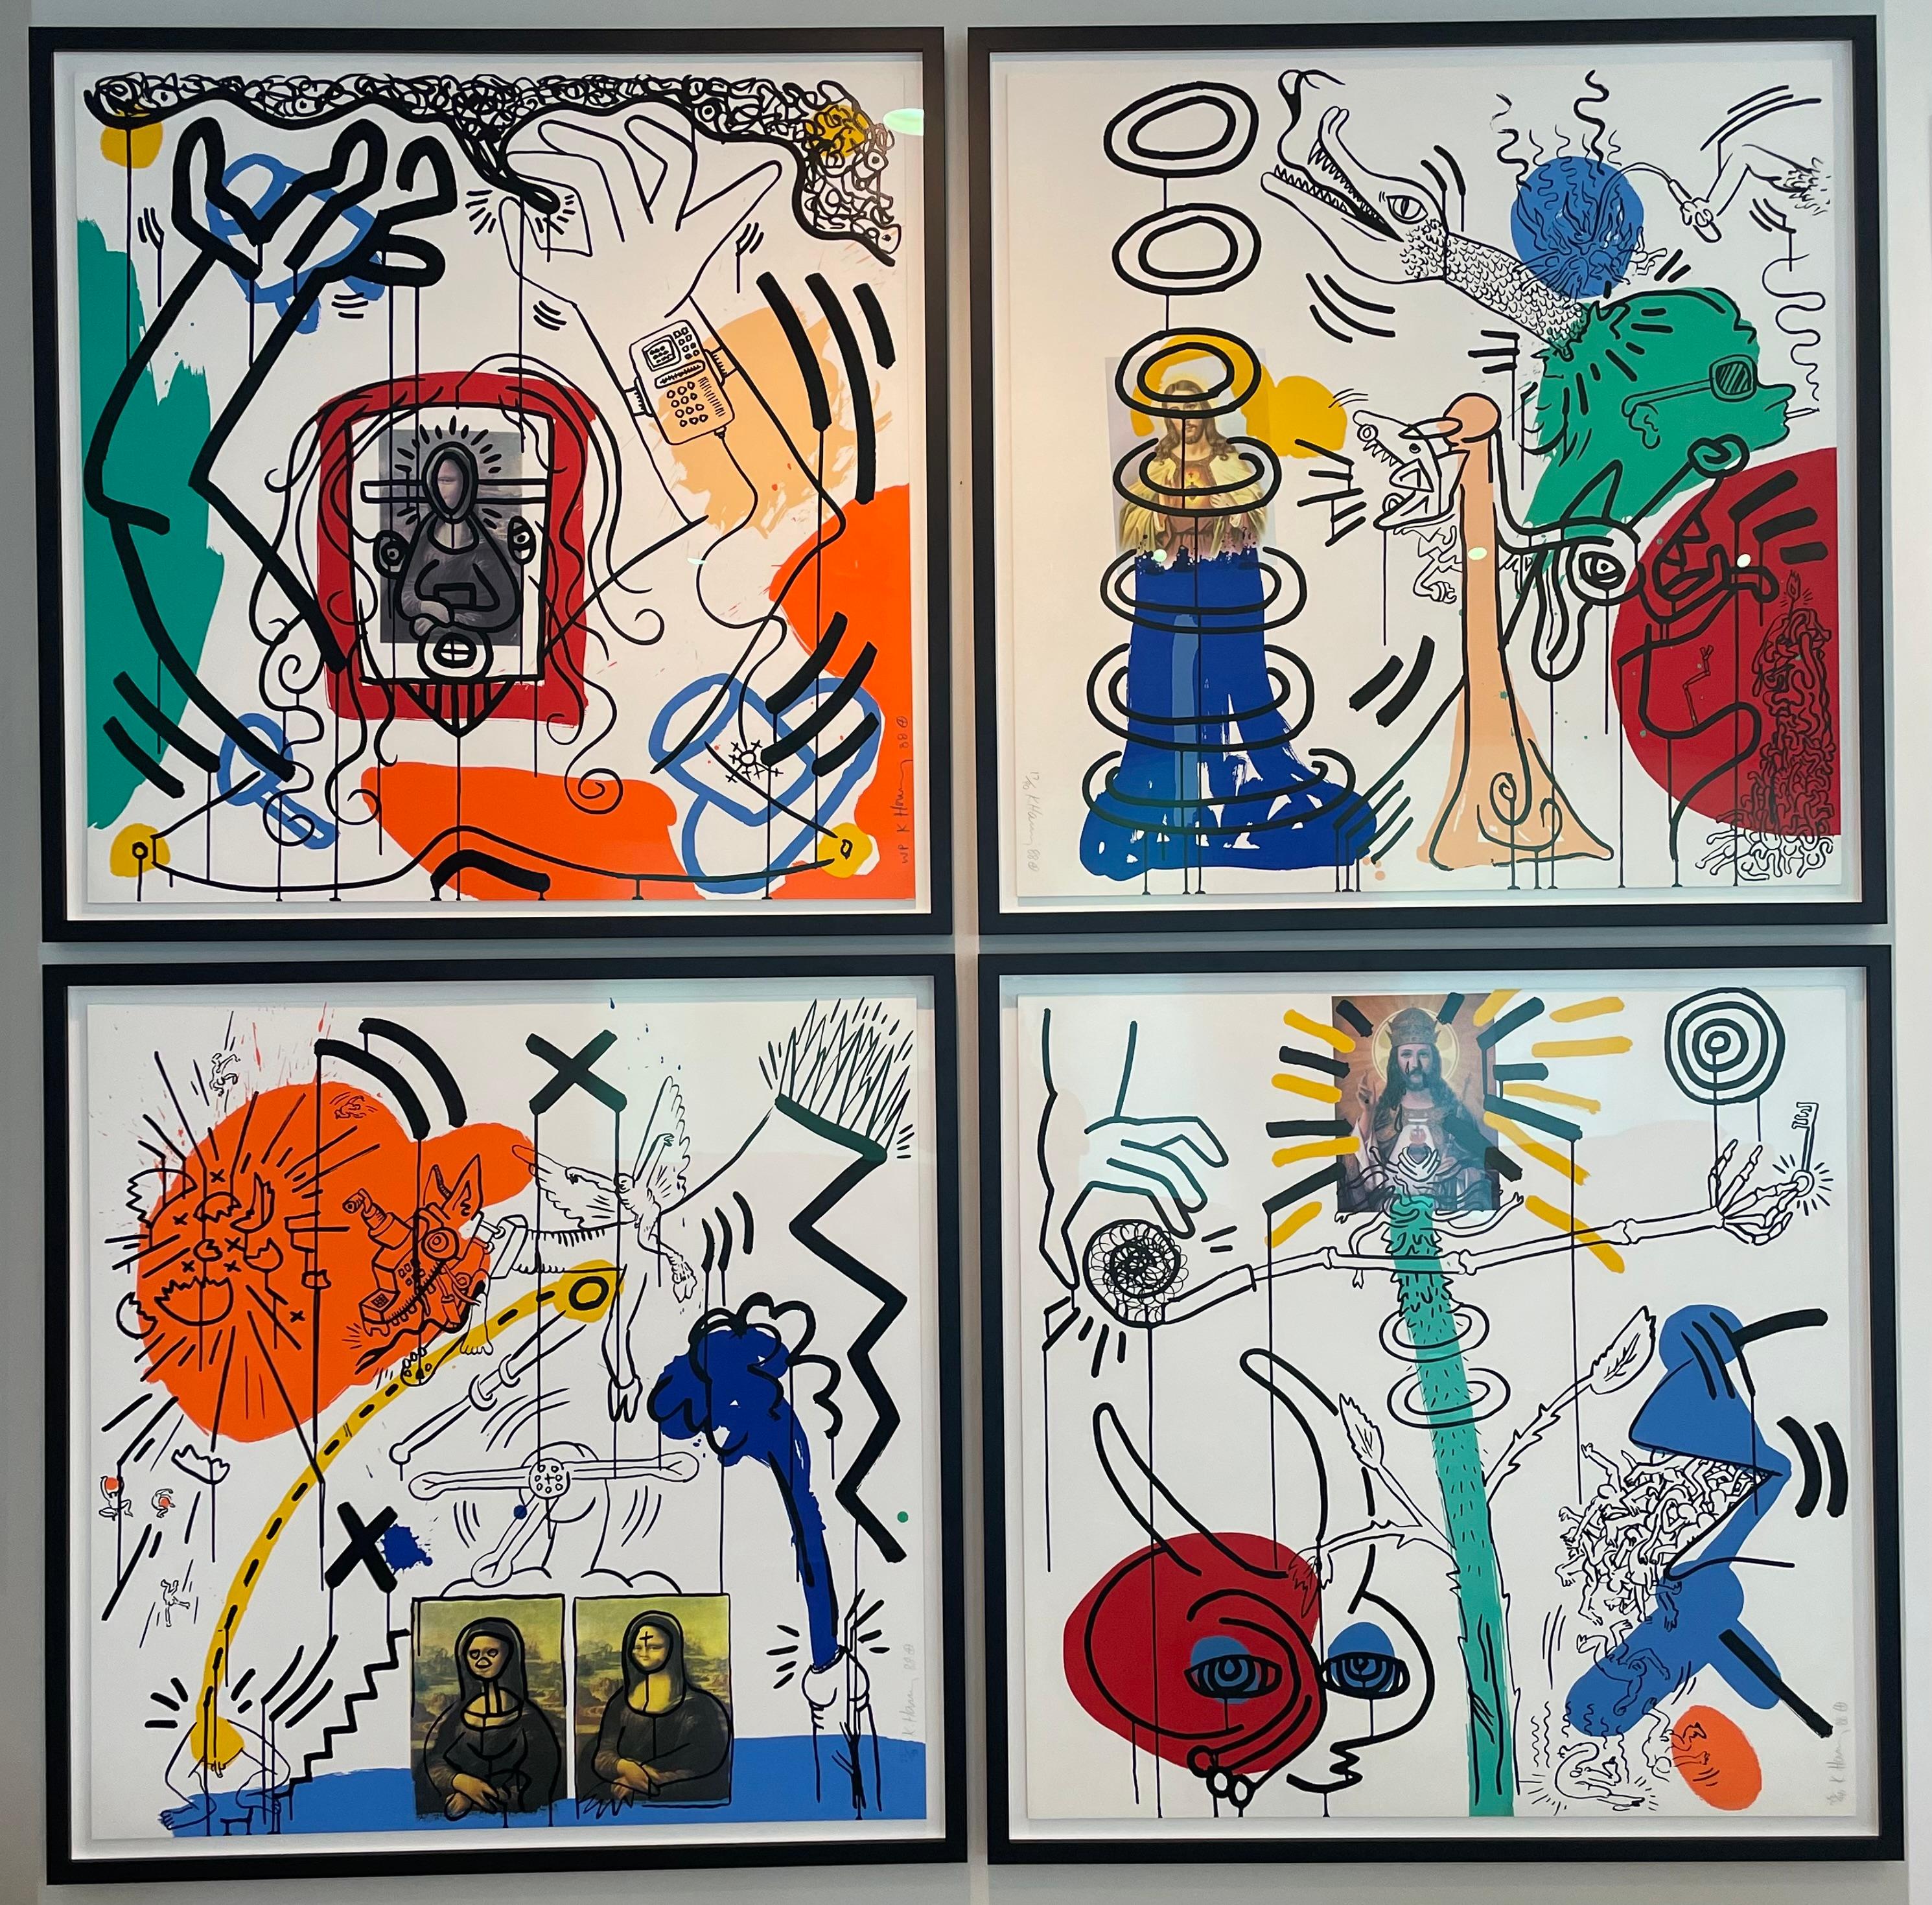 Künstler: Keith Haring 
Titel: Apokalypse 5
Größe:  38 × 38 in  96.5 × 96.5 cm
Medium: Farbsiebdruck auf Lenox Museum Board
Auflage: 17 von 90 
Jahr: 1988
Anmerkungen: Vom Künstler handsigniert, mit Bleistift signiert, nummeriert und datiert.